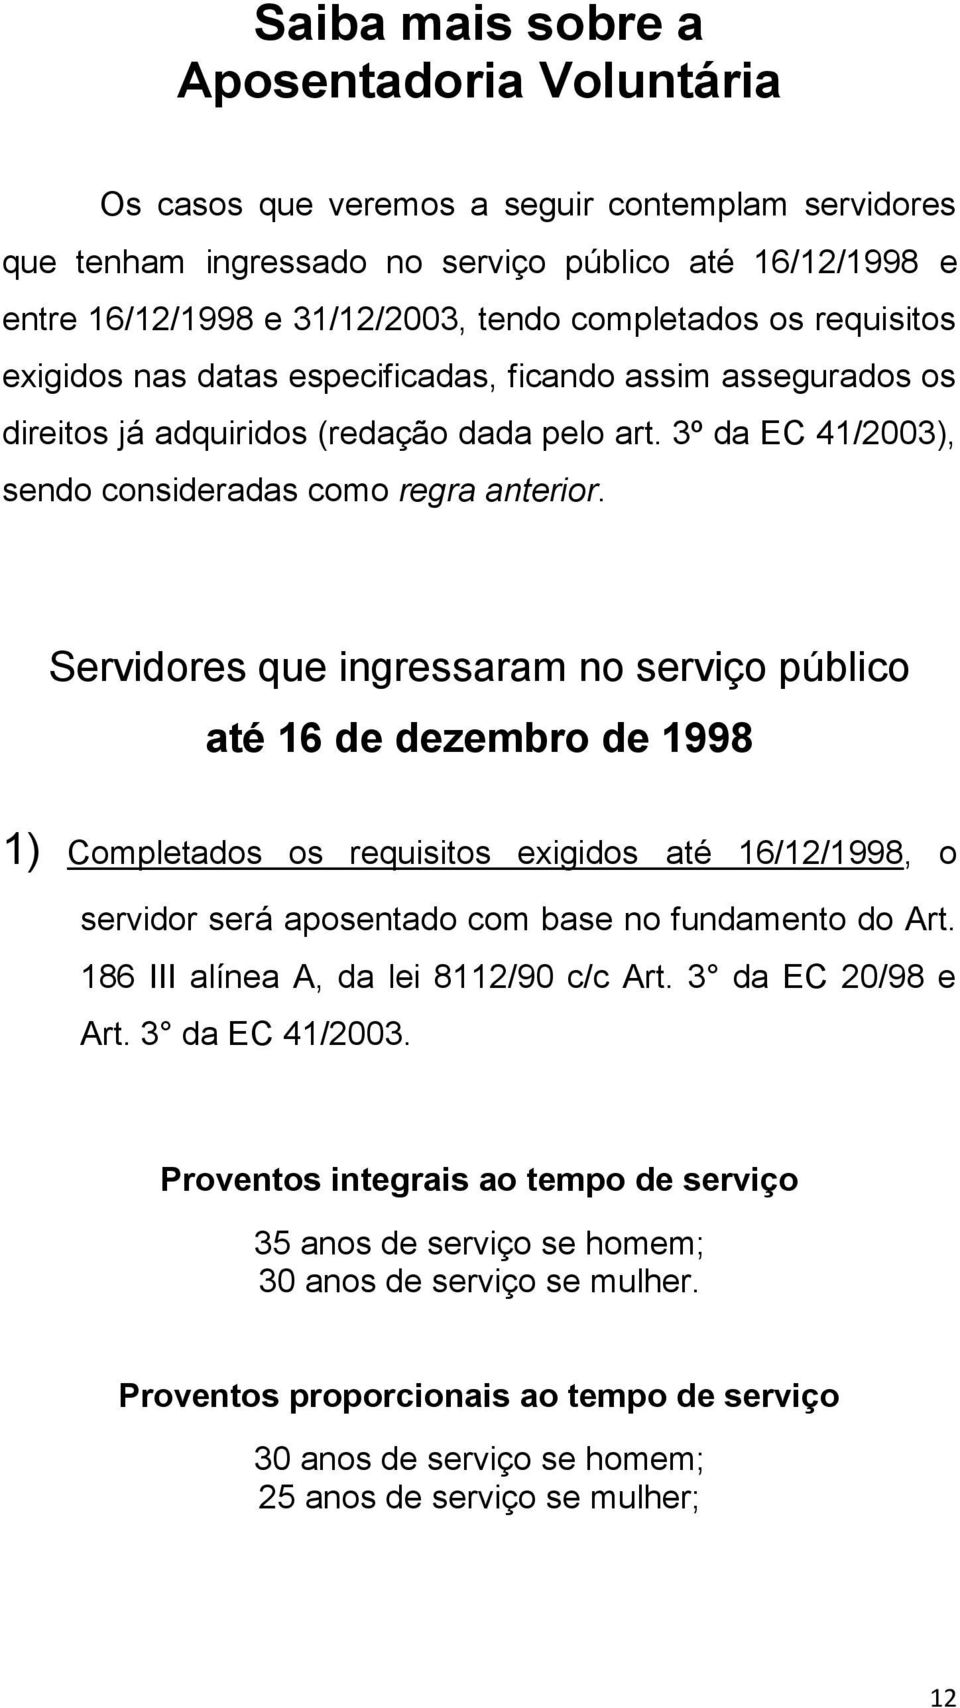 Servidores que ingressaram no serviço público até 16 de dezembro de 1998 1) Completados os requisitos exigidos até 16/12/1998, o servidor será aposentado com base no fundamento do Art.